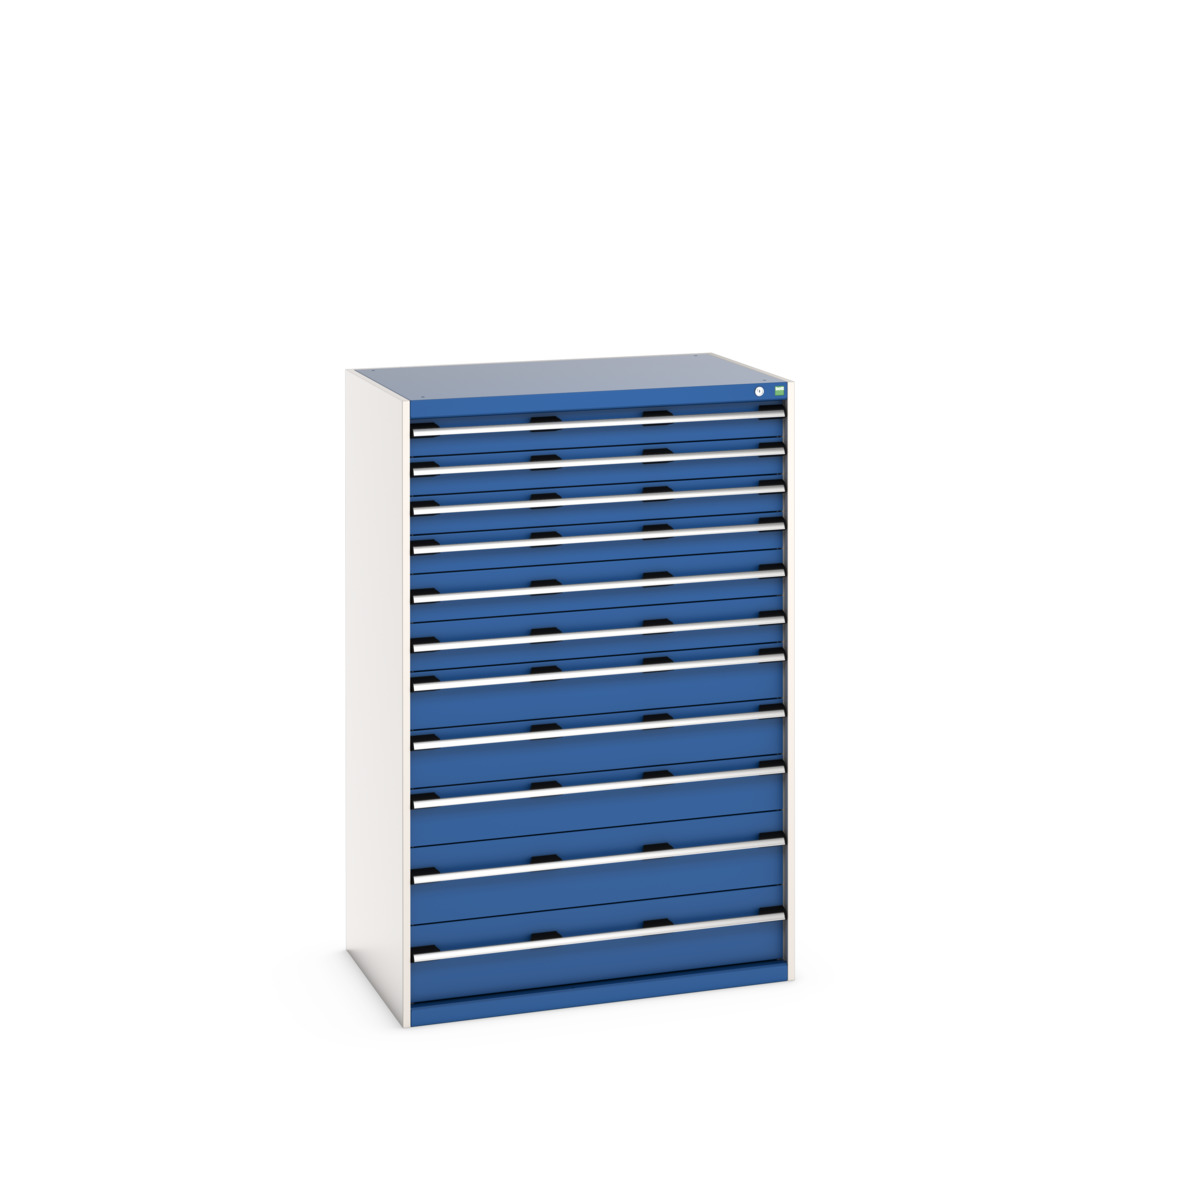 40029037.11V - cubio drawer cabinet